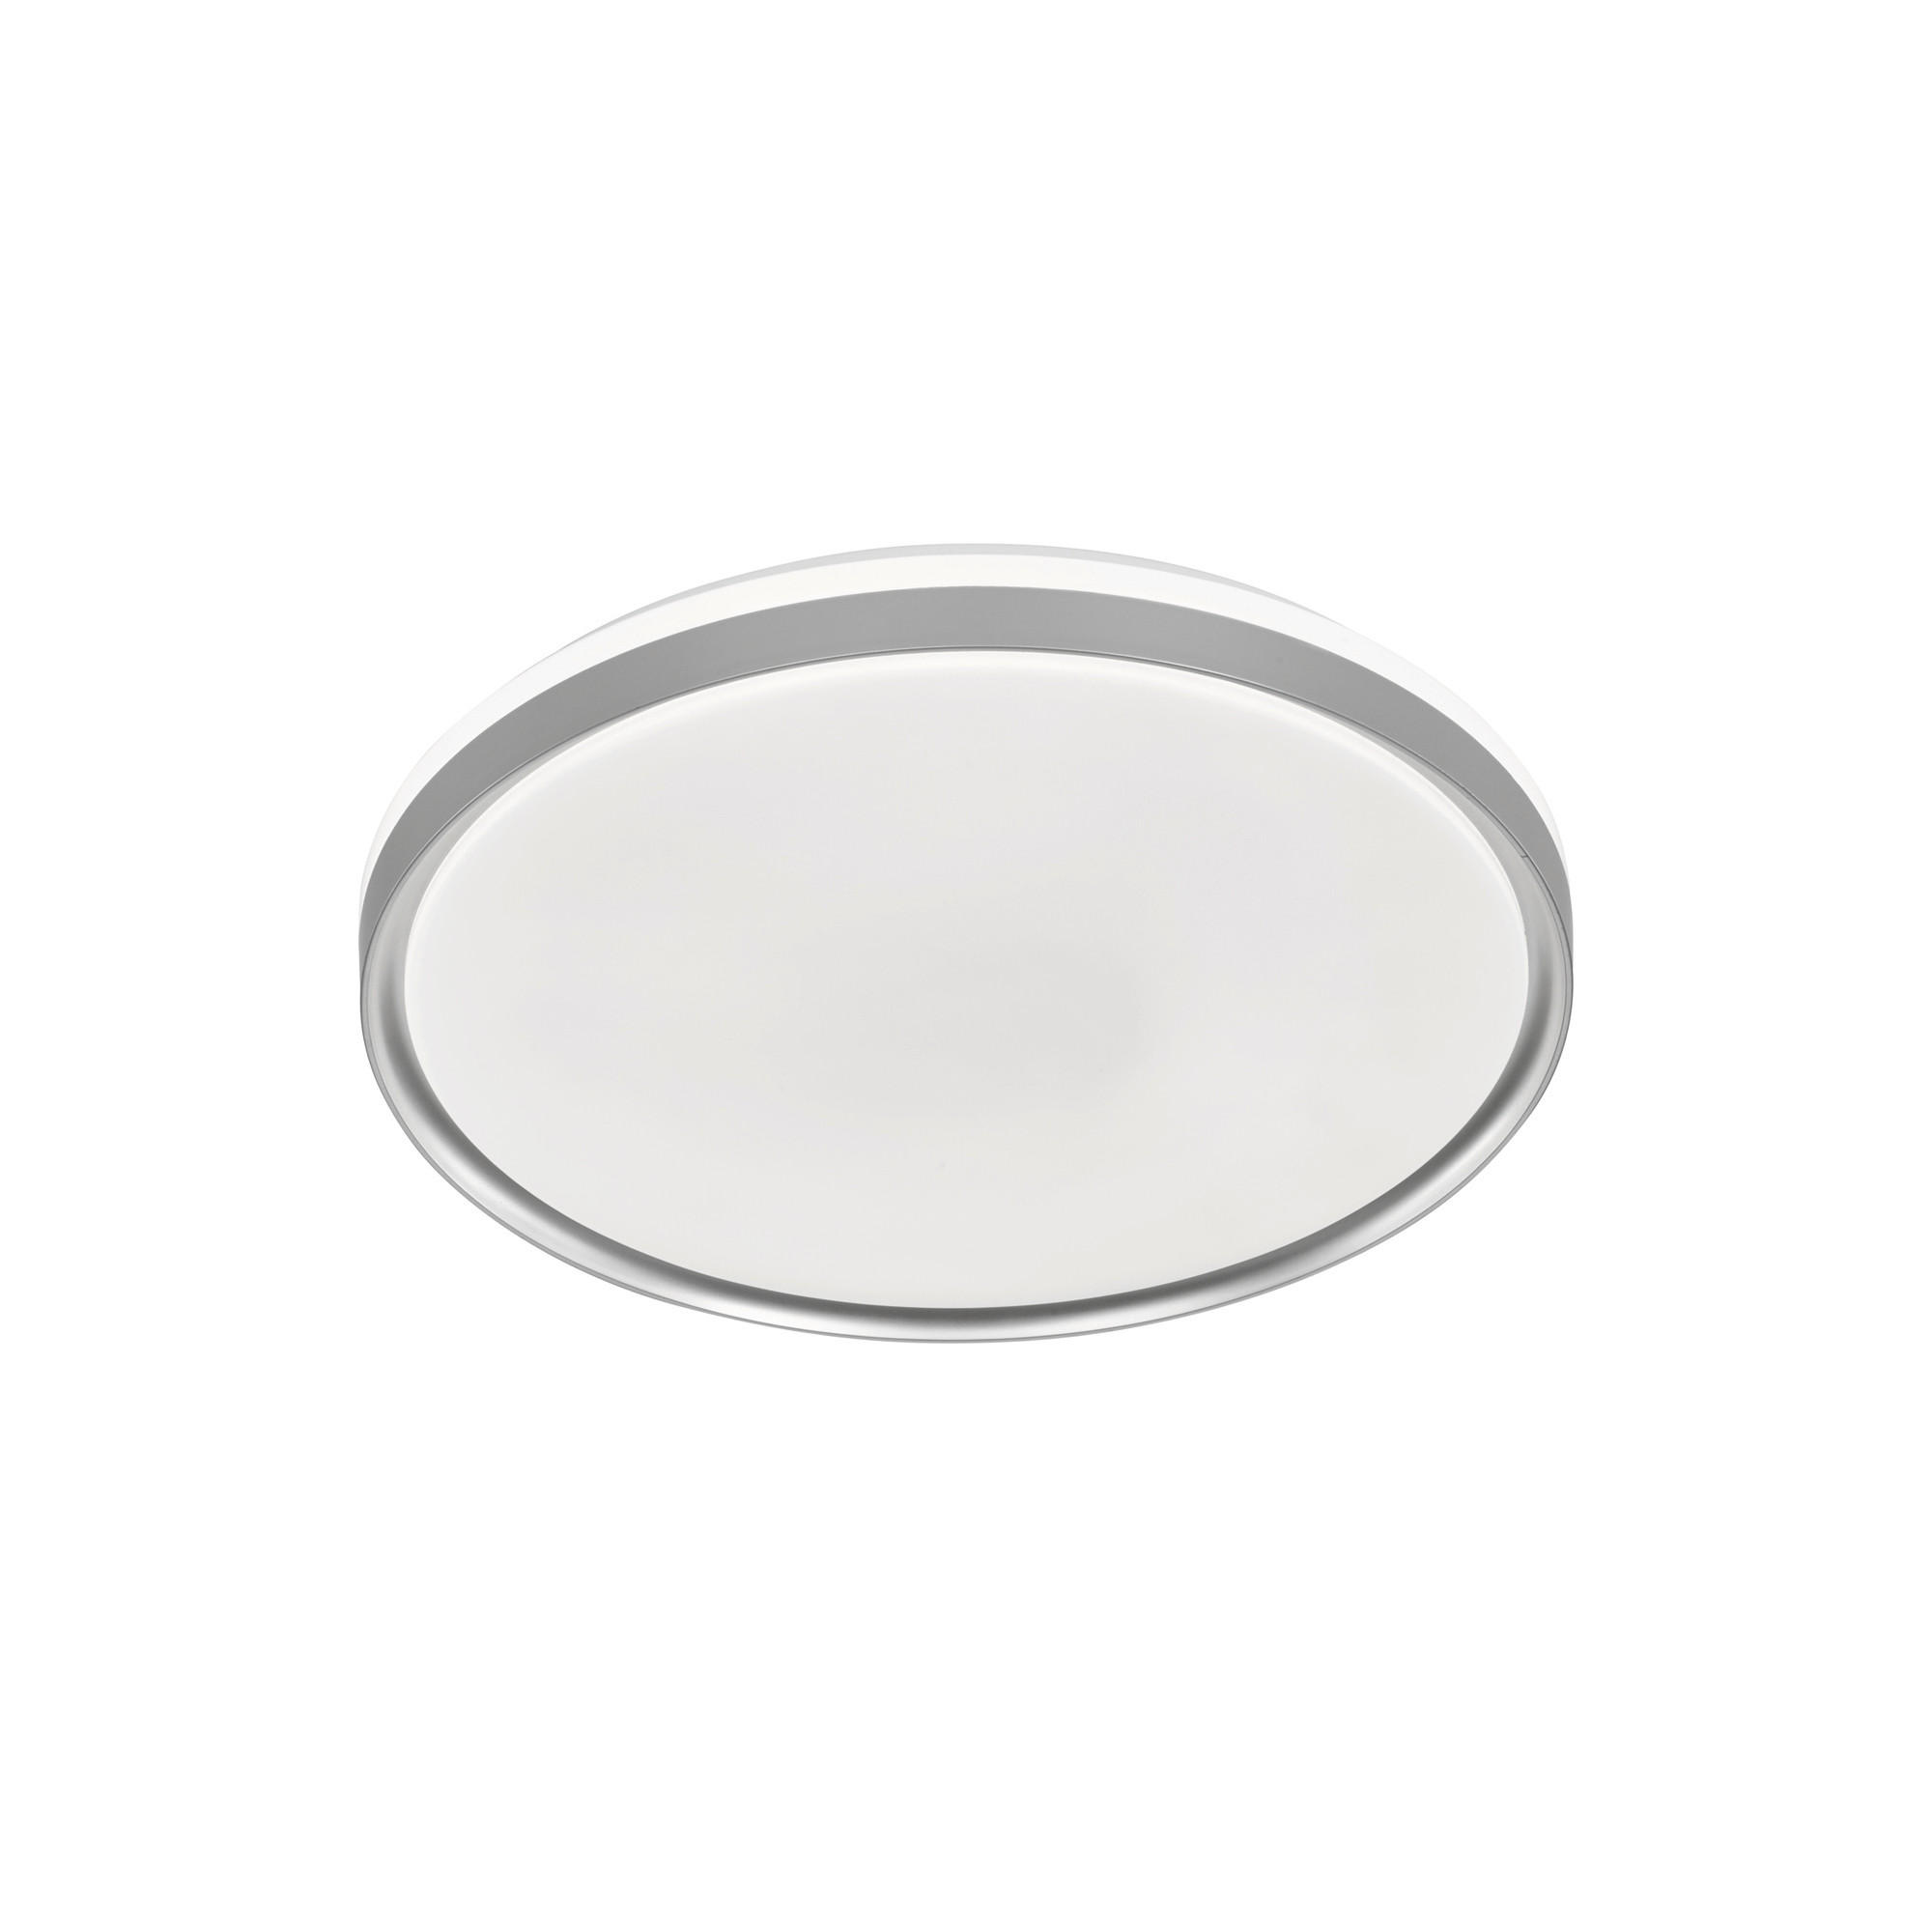 LED-DECKENLEUCHTE JASO 39/7 cm   - Silberfarben/Weiß, KONVENTIONELL, Glas/Kunststoff (39/7cm) - Fischer & Honsel